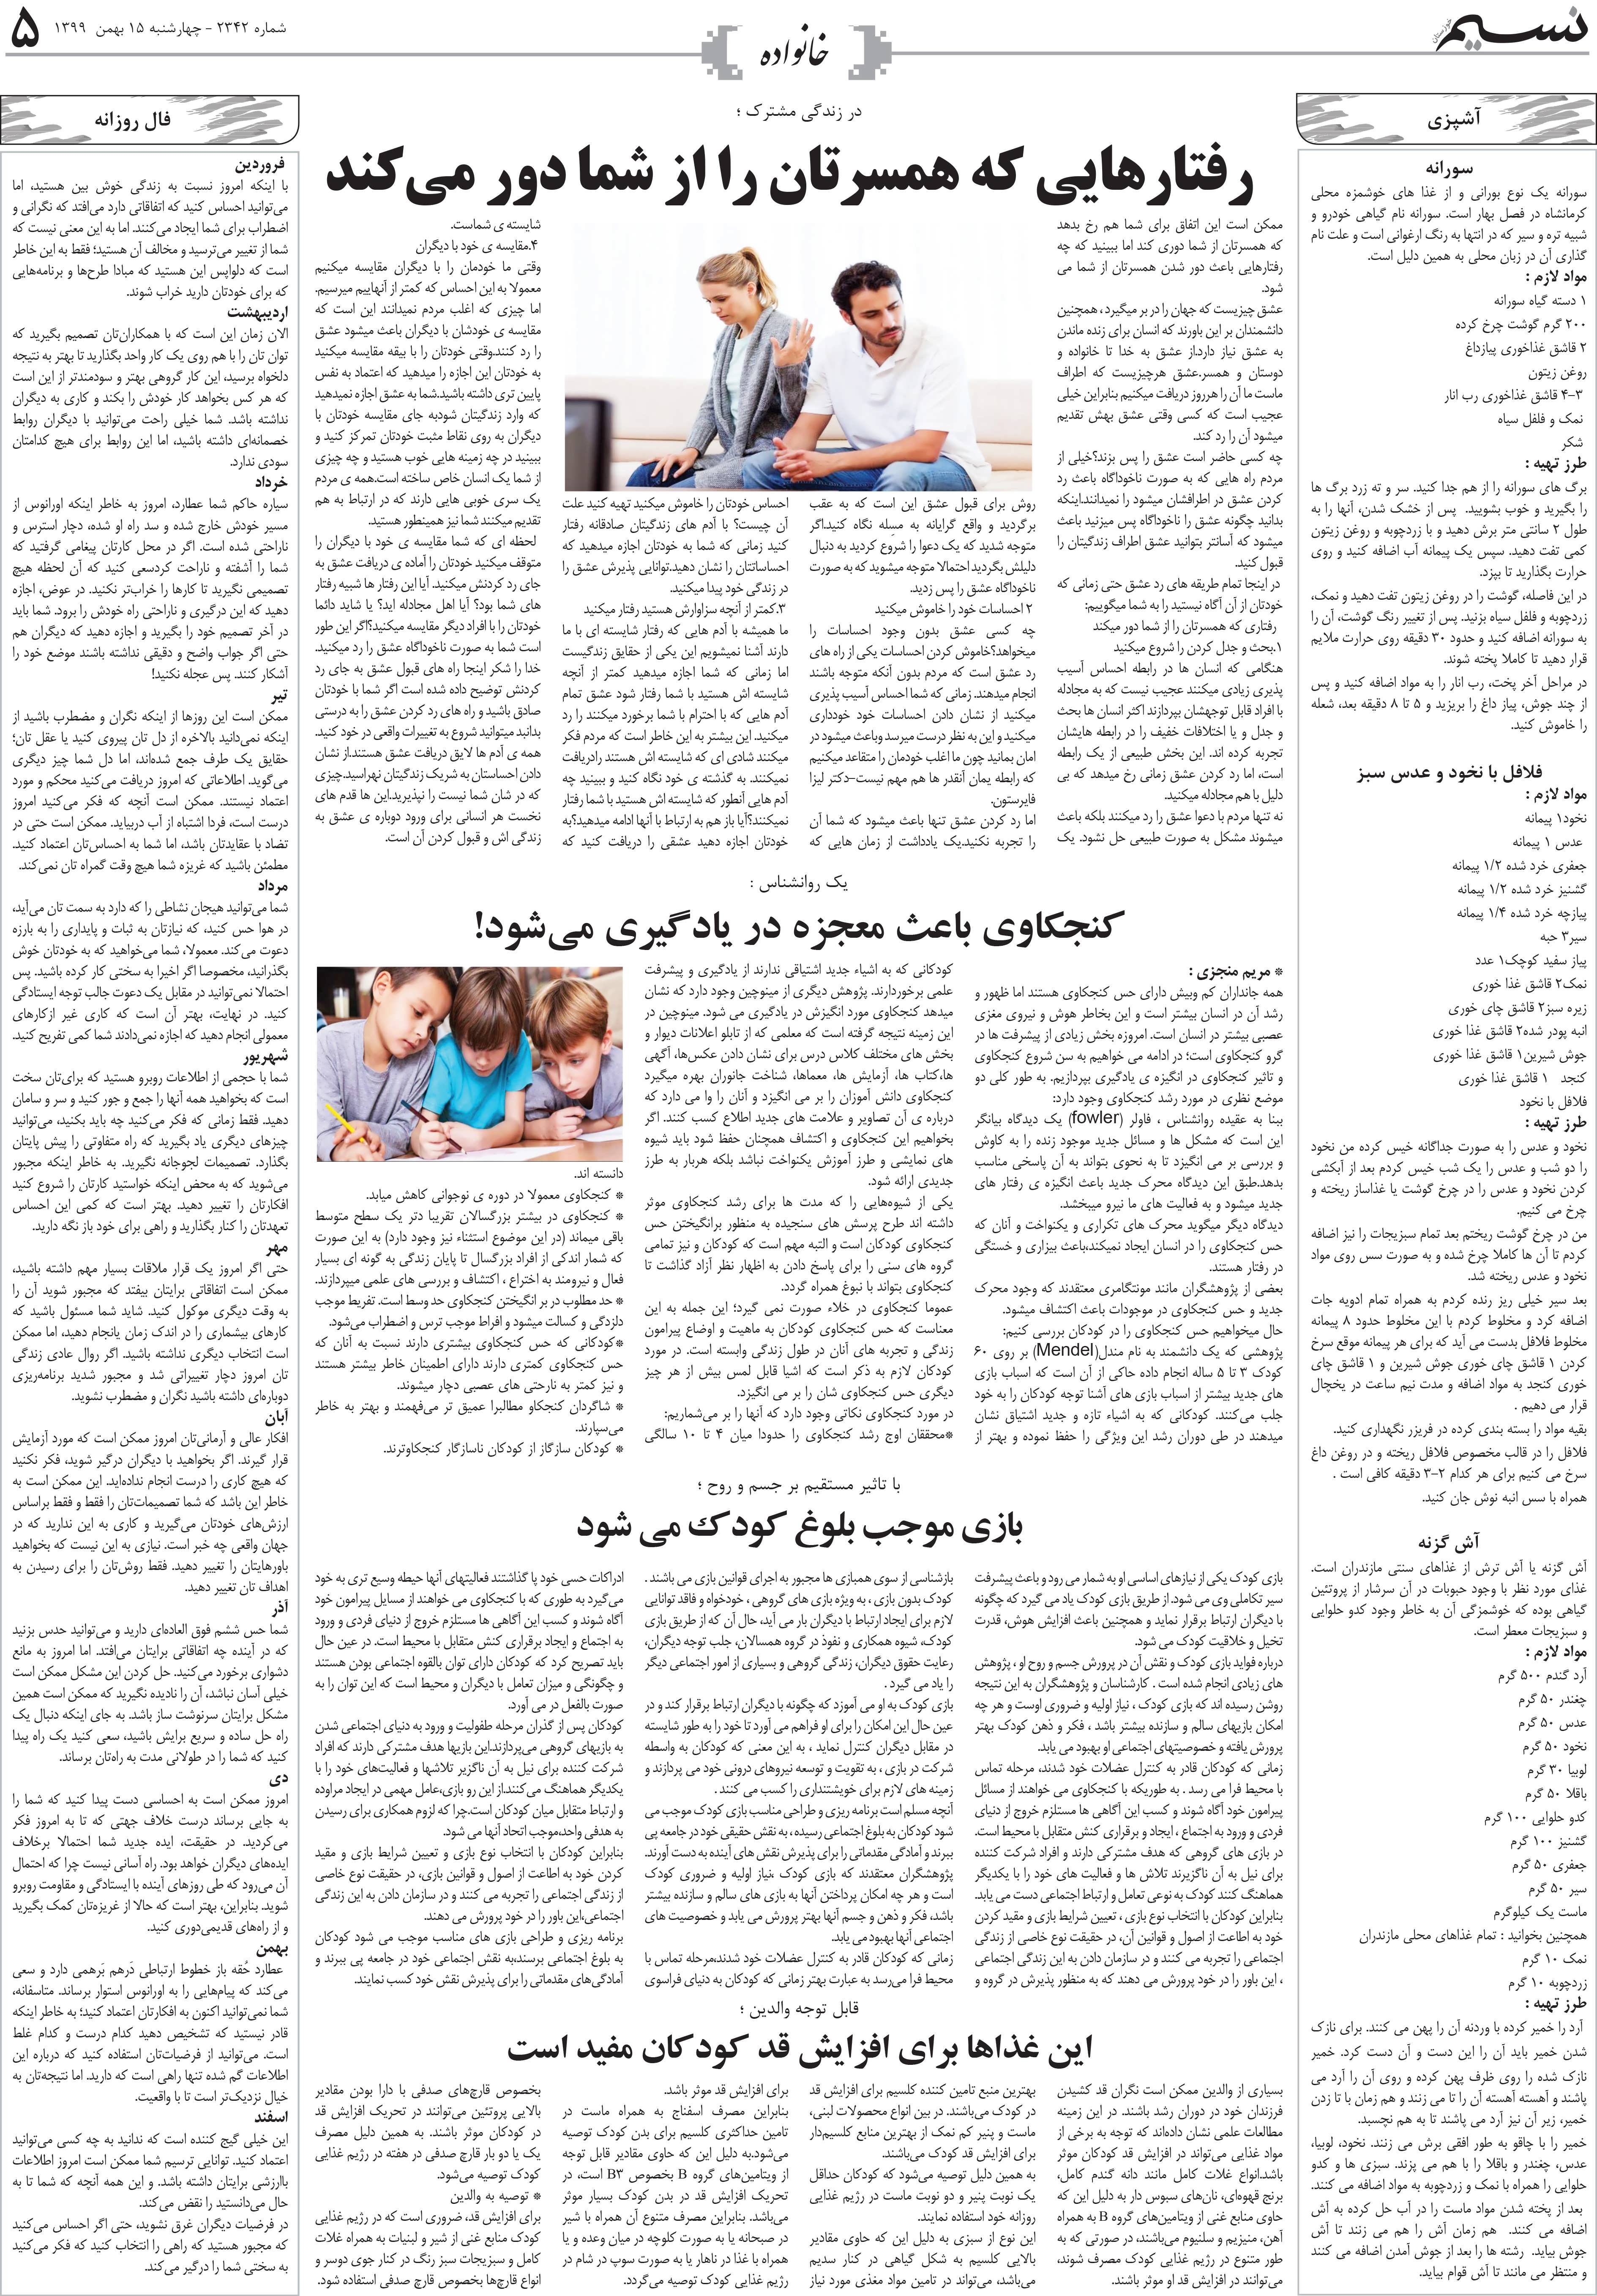 صفحه خانواده روزنامه نسیم شماره 2342